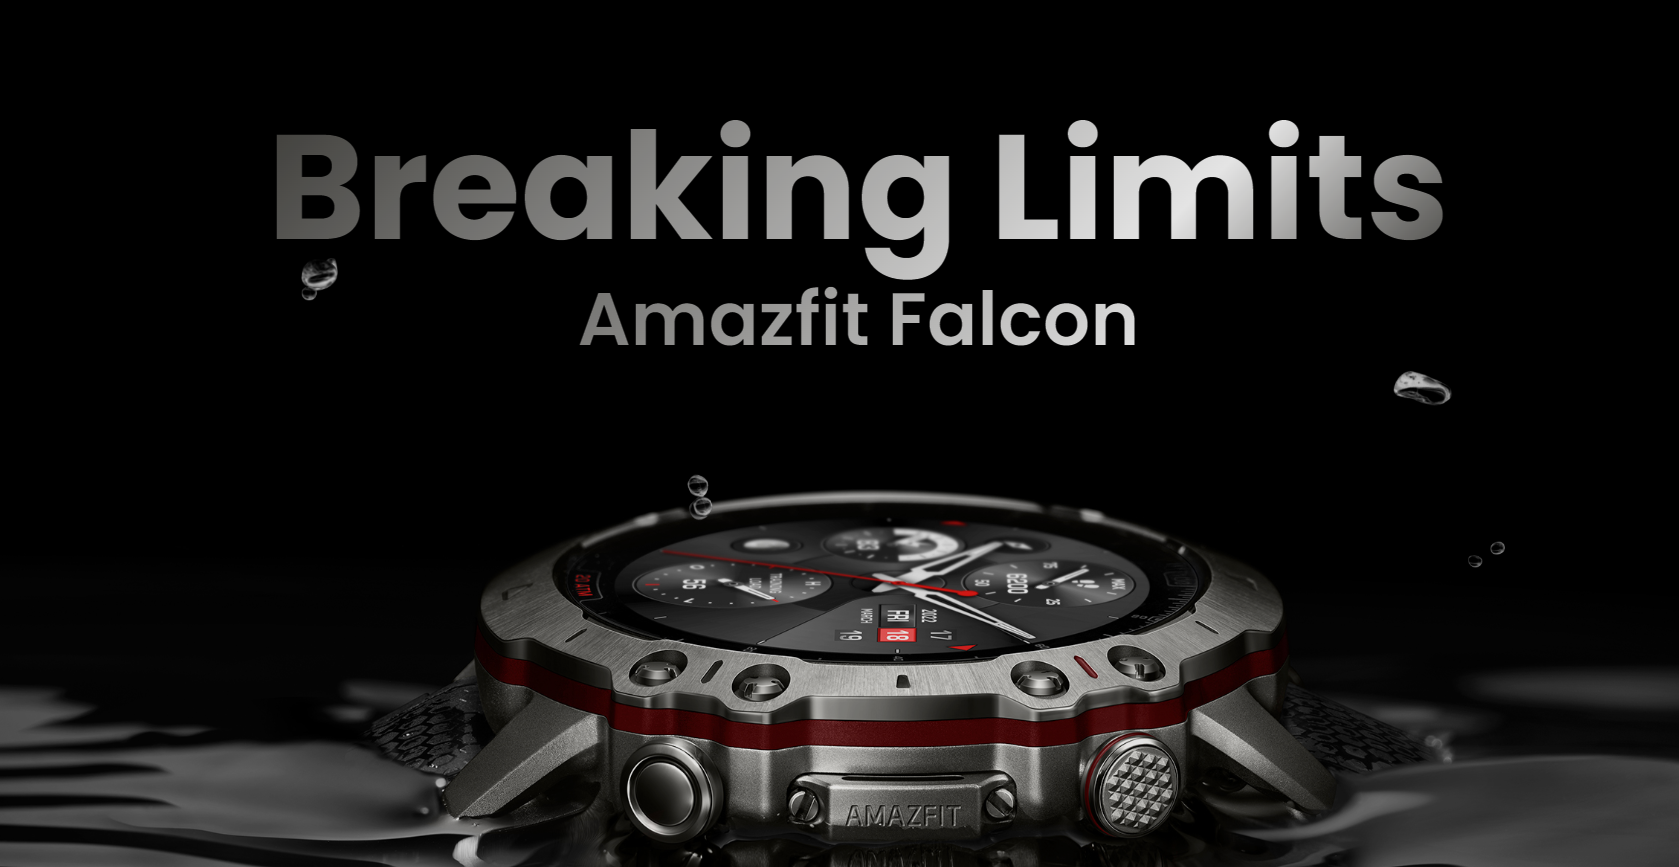 Presentado el smartwatch Amazfit Falcon con protección de 20 ATM, 159 modos de deporte, GPS y SpO2 por 500 dólares